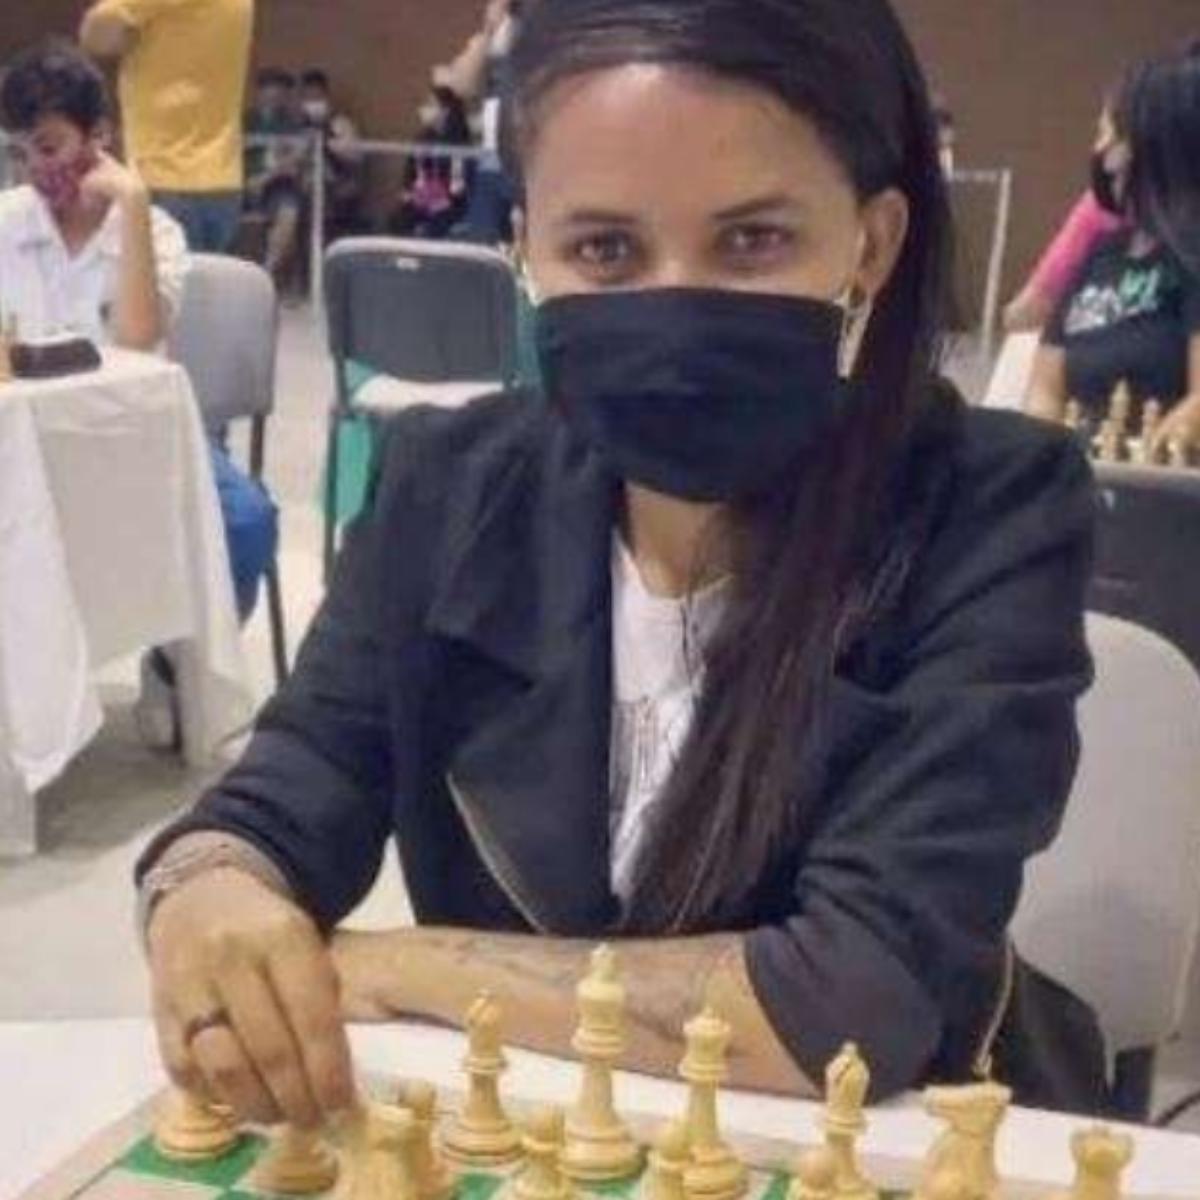 Enxadrista Potiguar precisa do seu apoio para representar o RN no Campeonato  Brasileiro Feminino de Xadrez - O Poti News